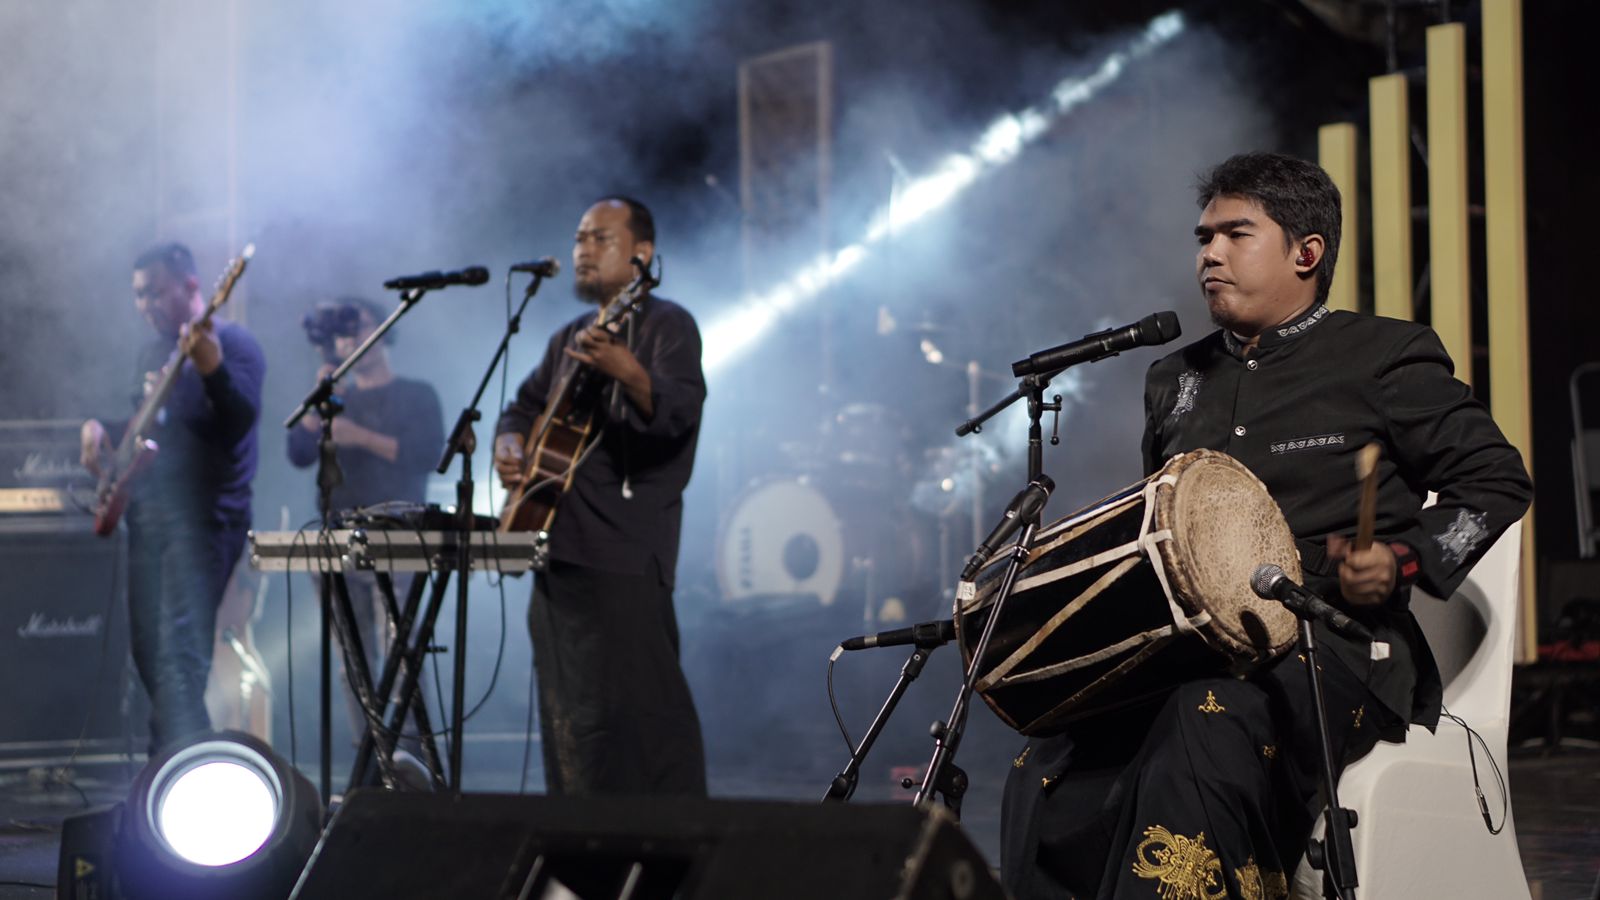 Yuk ngopi sambil nikmati musik etnik dalam Festival Musik Etnik di Taman Budaya